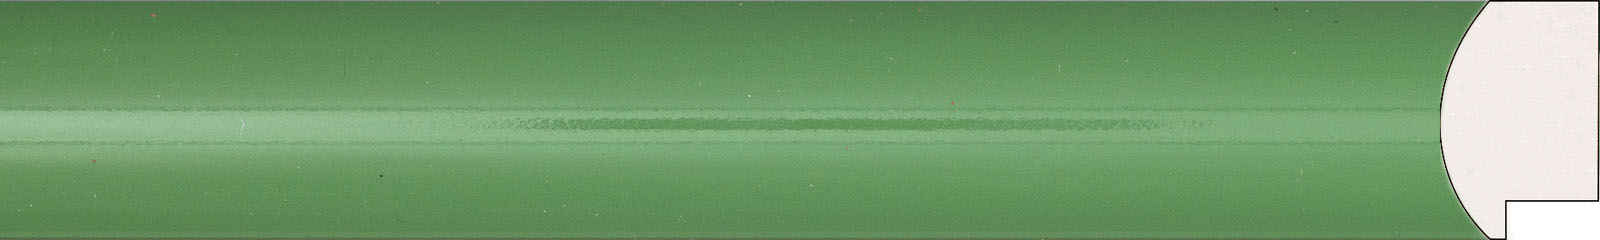 Картинный багет 1624 цвет зеленый